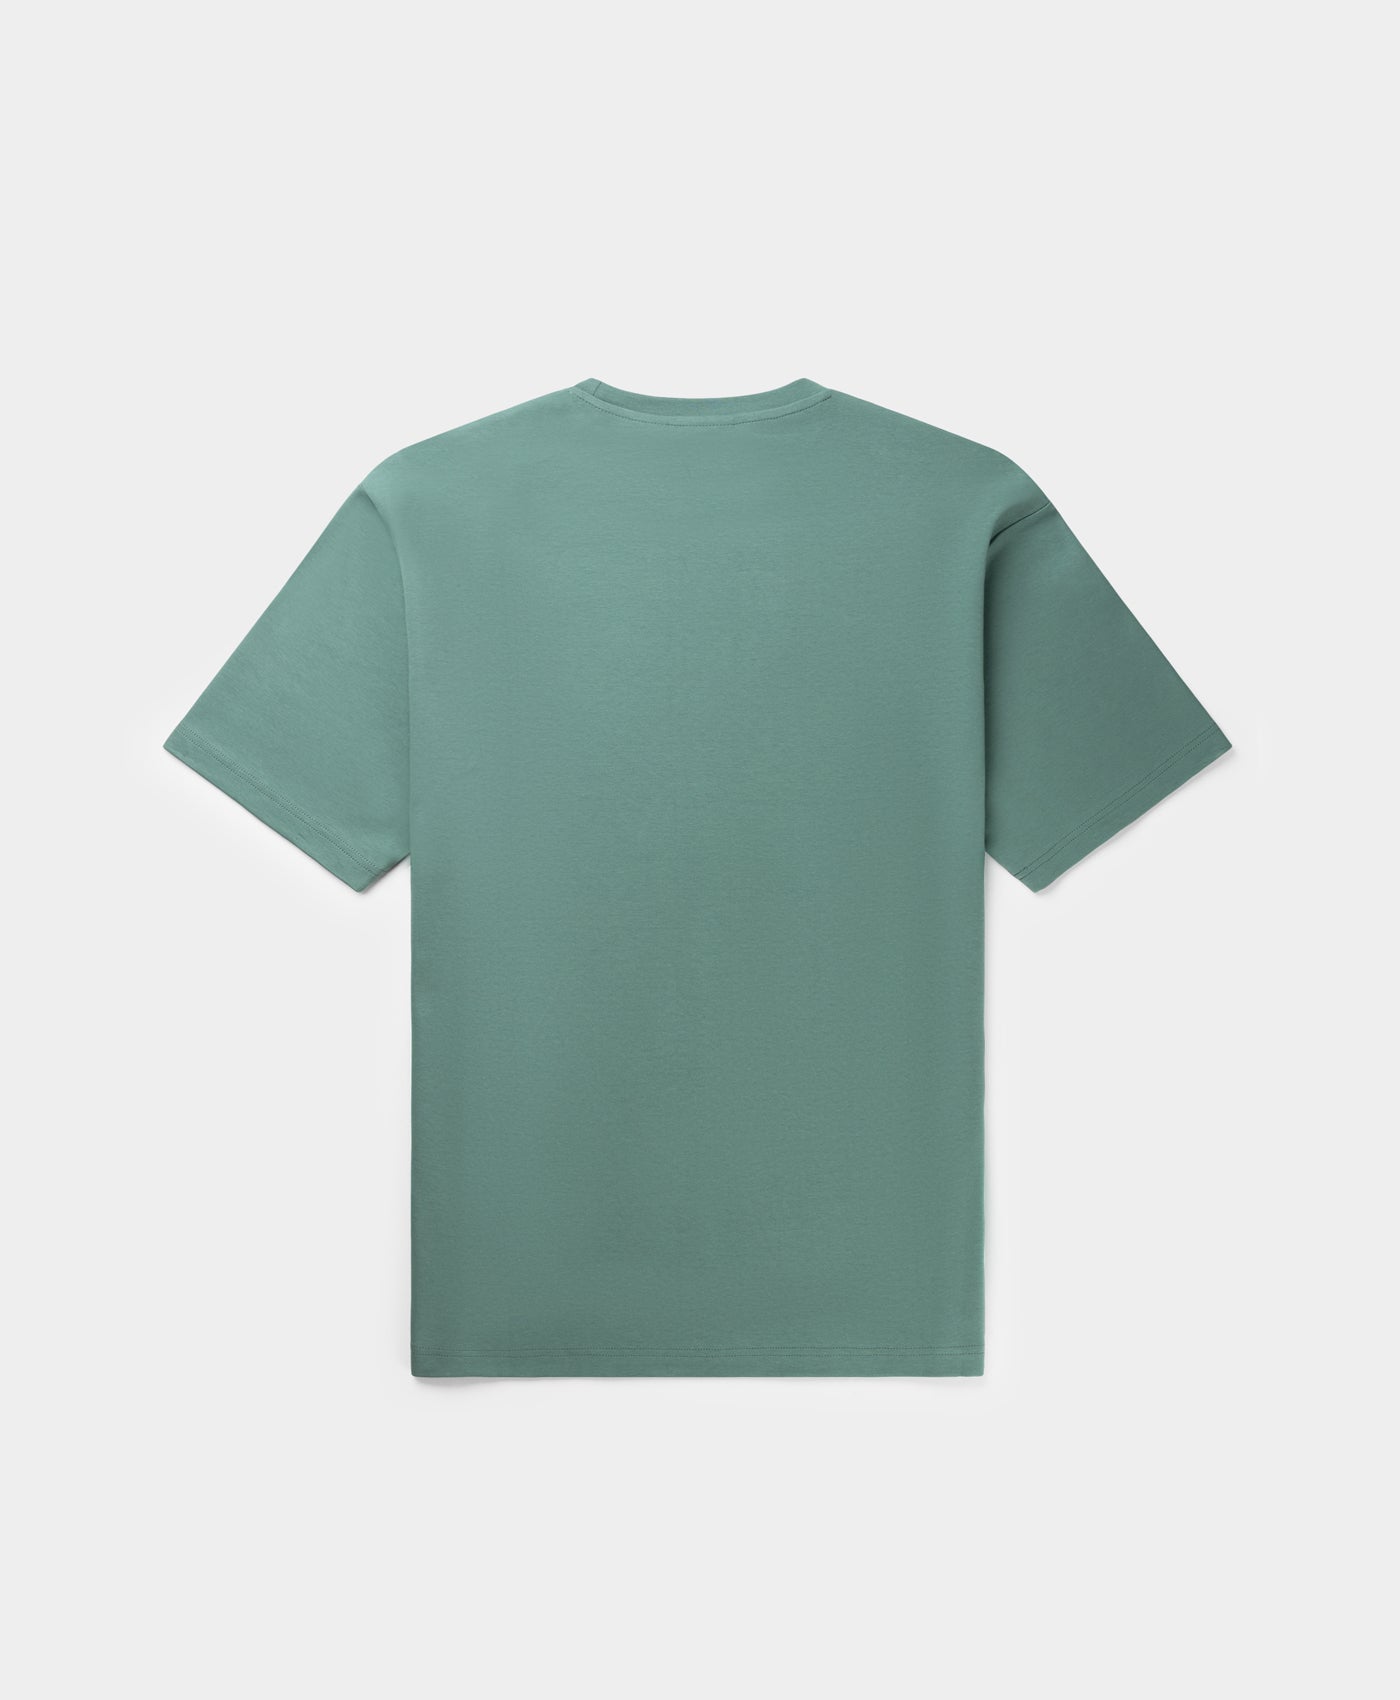 DP - Silver Green Juma Oversized T-Shirt - Packshot - Rear